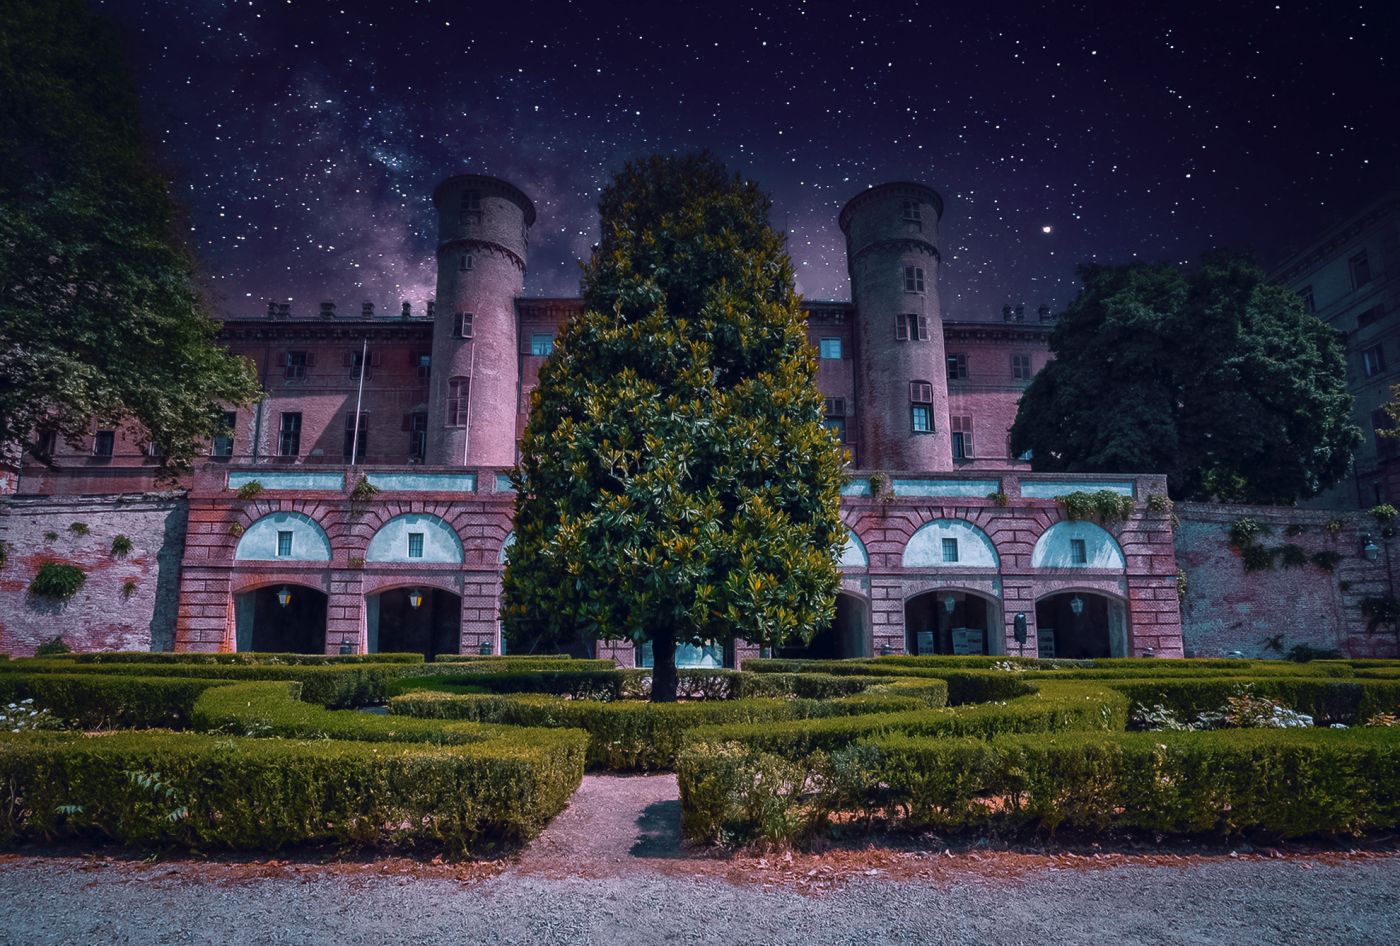 Una notte al Castello di Moncalieri